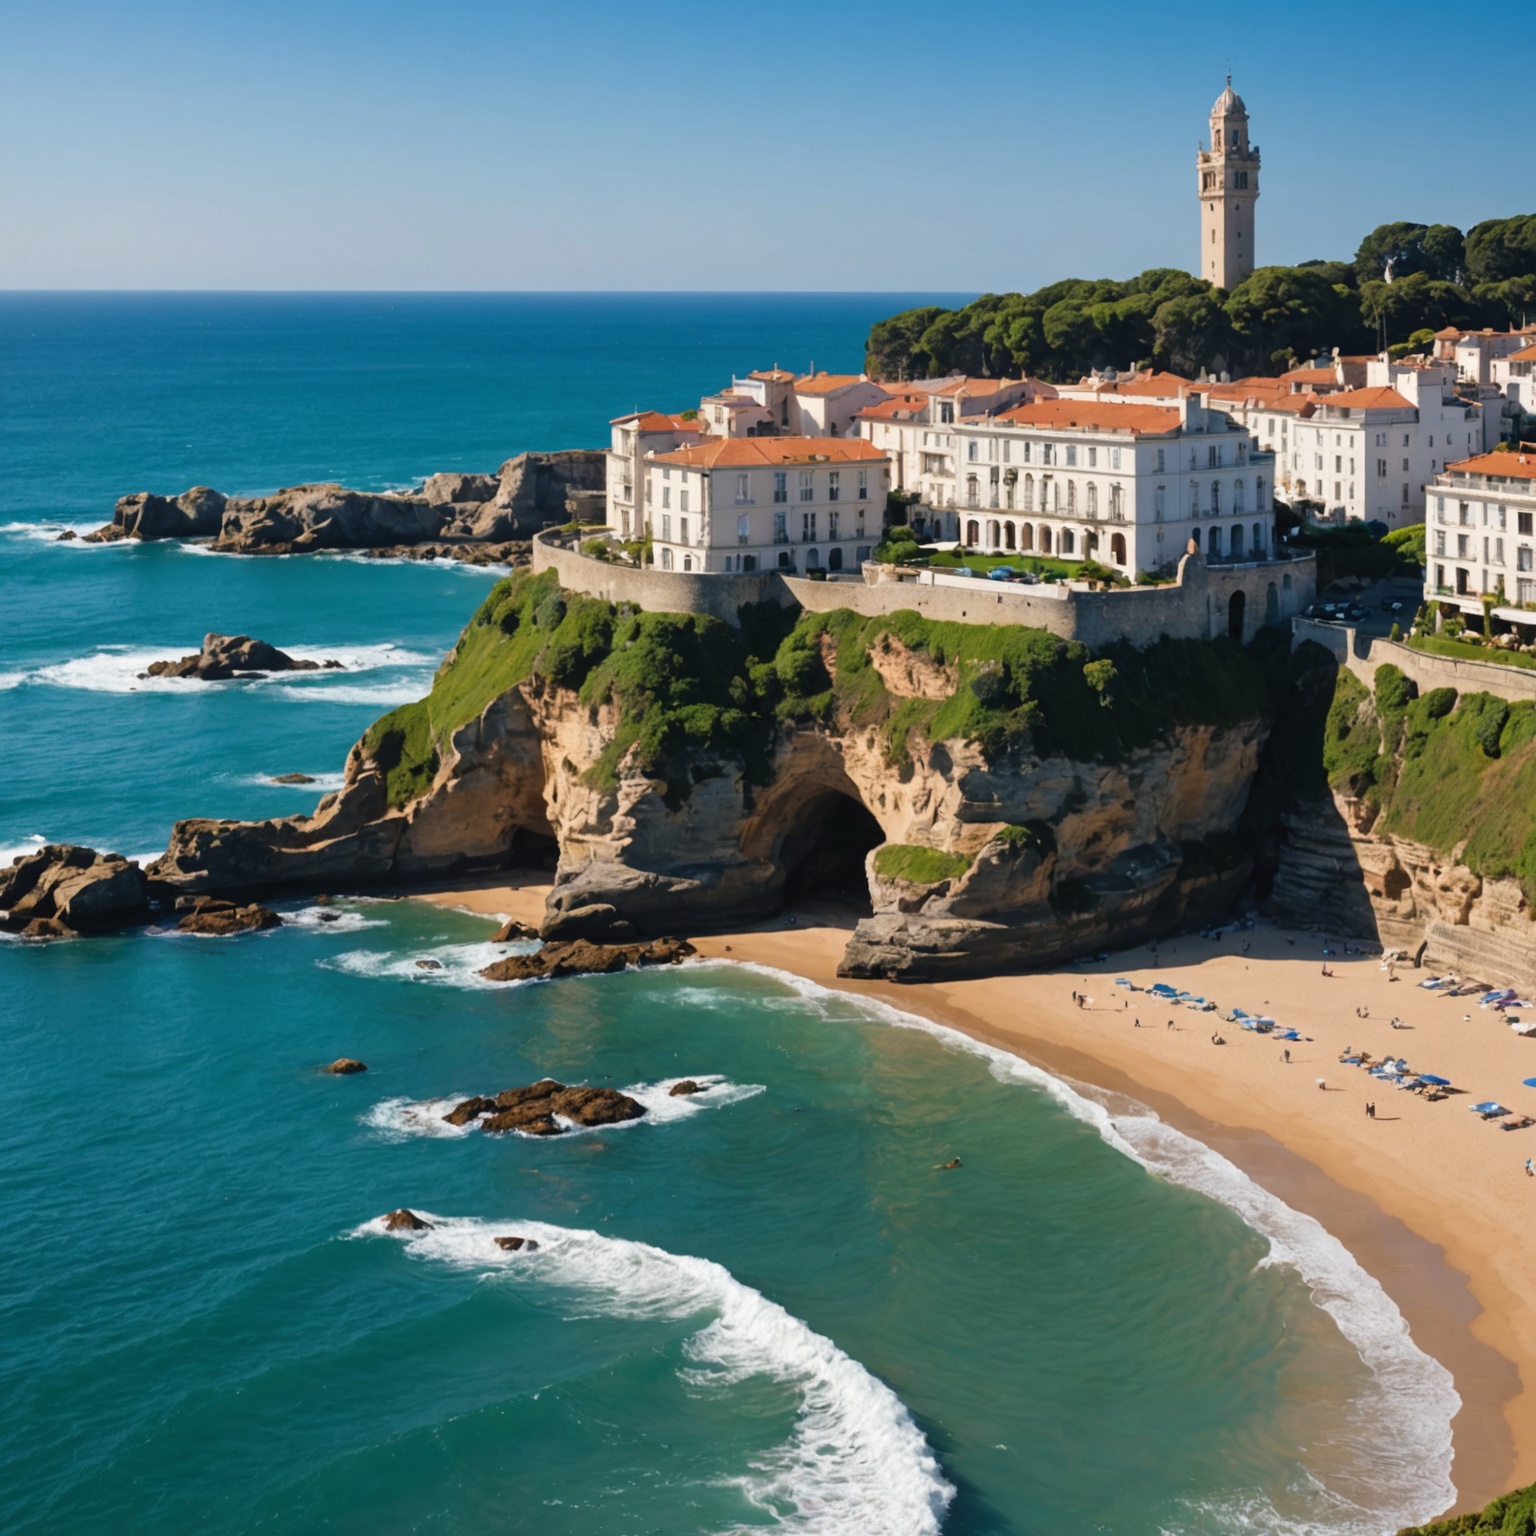 Vente de bien immobilier à Biarritz: Techniques incontournables pour une transaction réussie